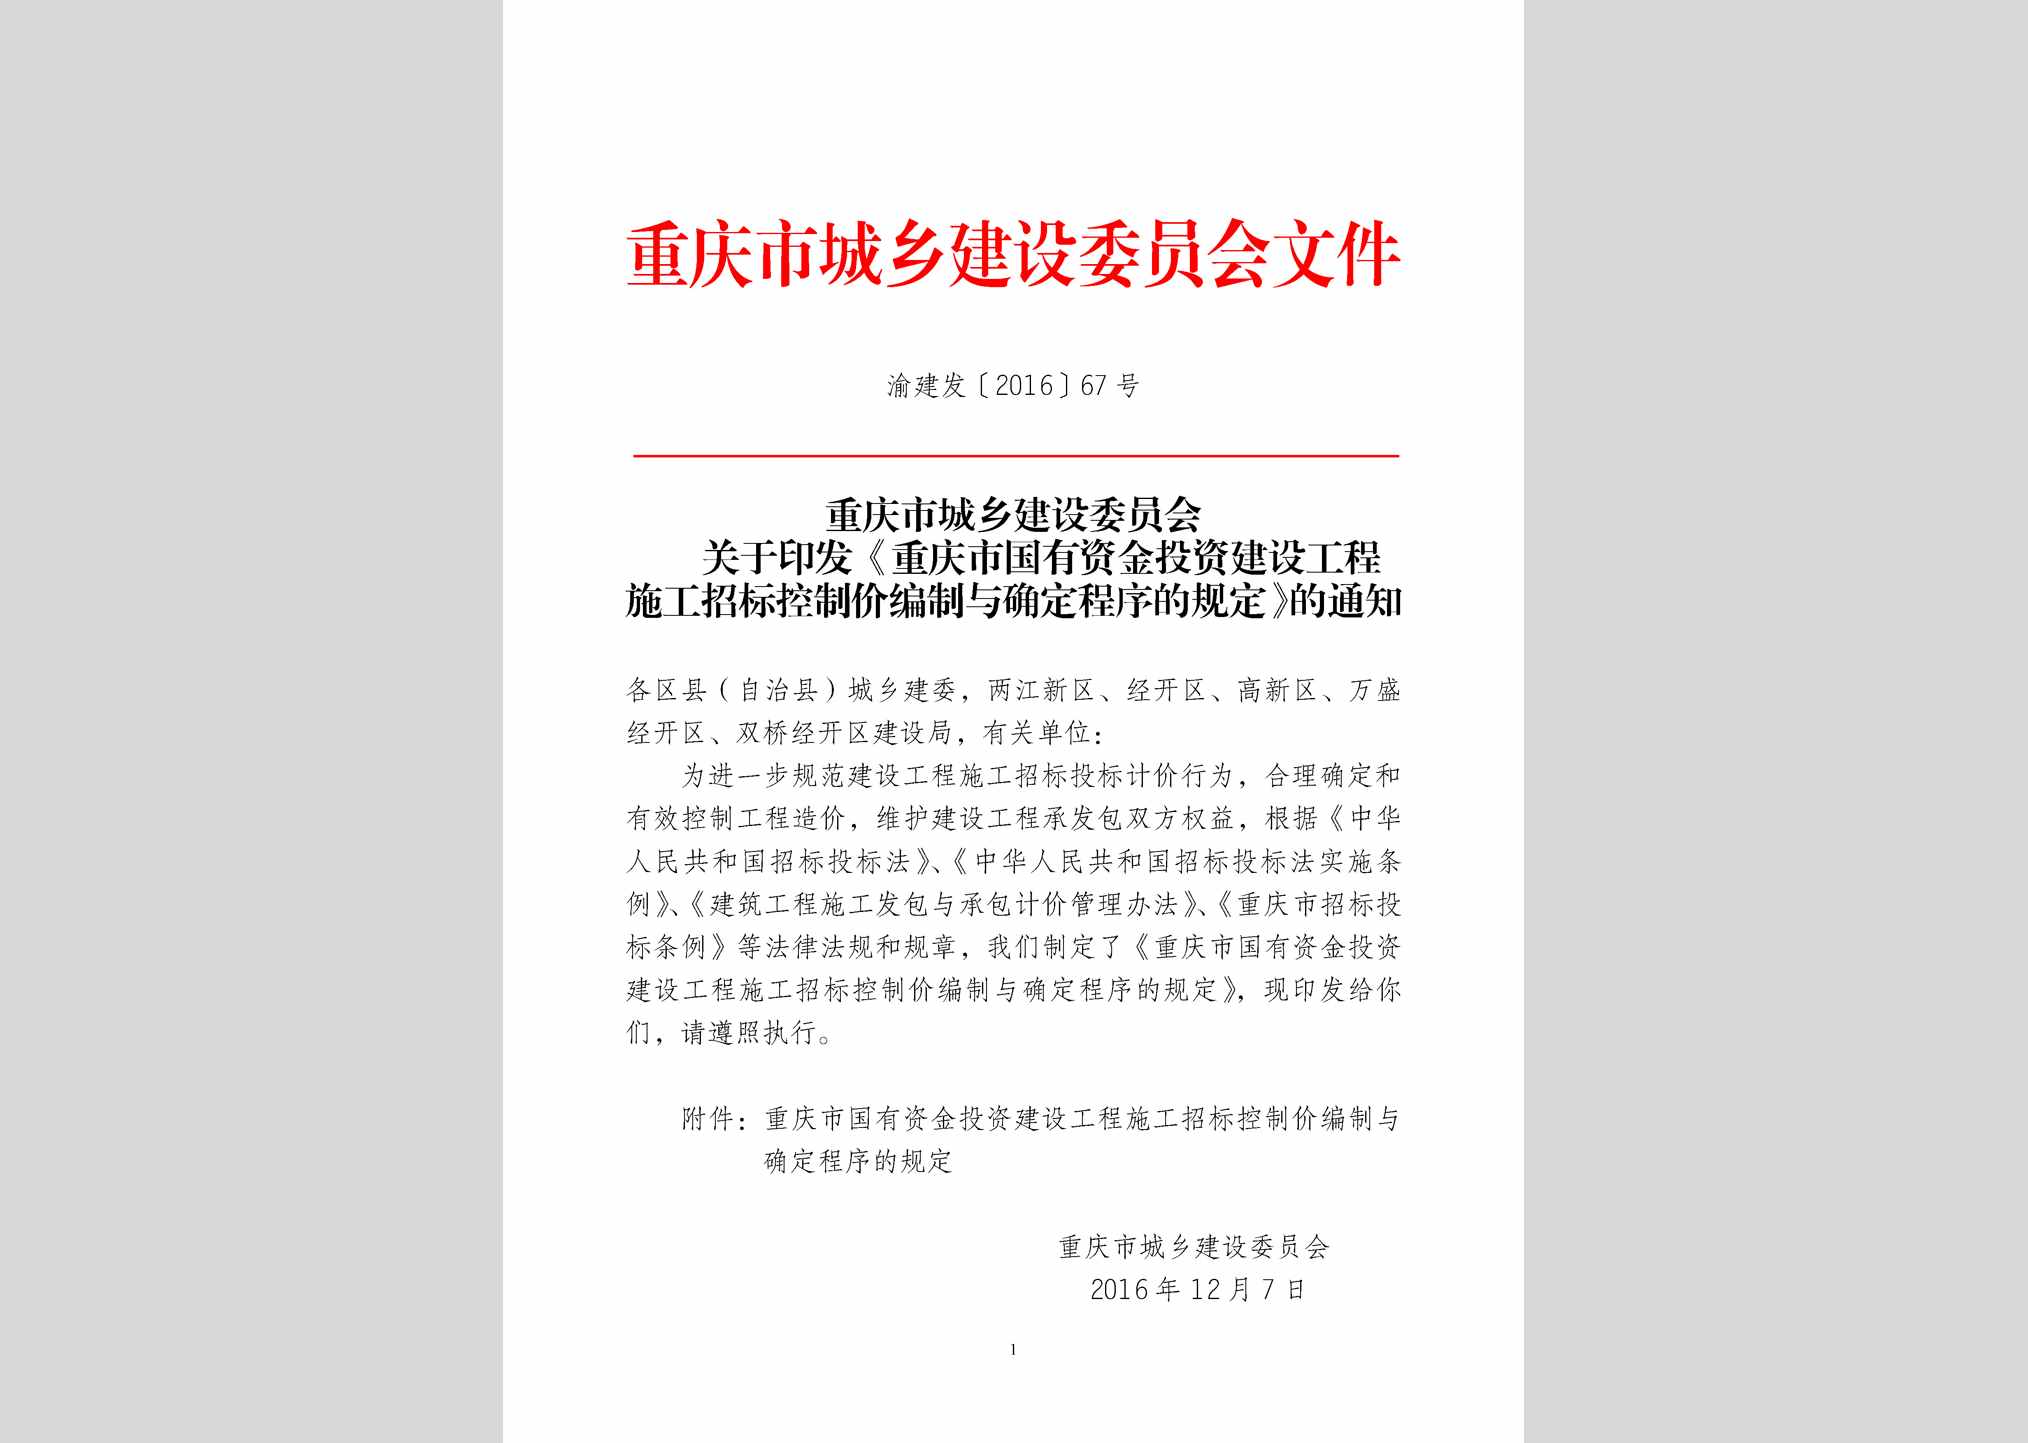 渝建发[2016]67号：重庆市国有资金投资建设工程施工招标控制价编制与确定程序的规定